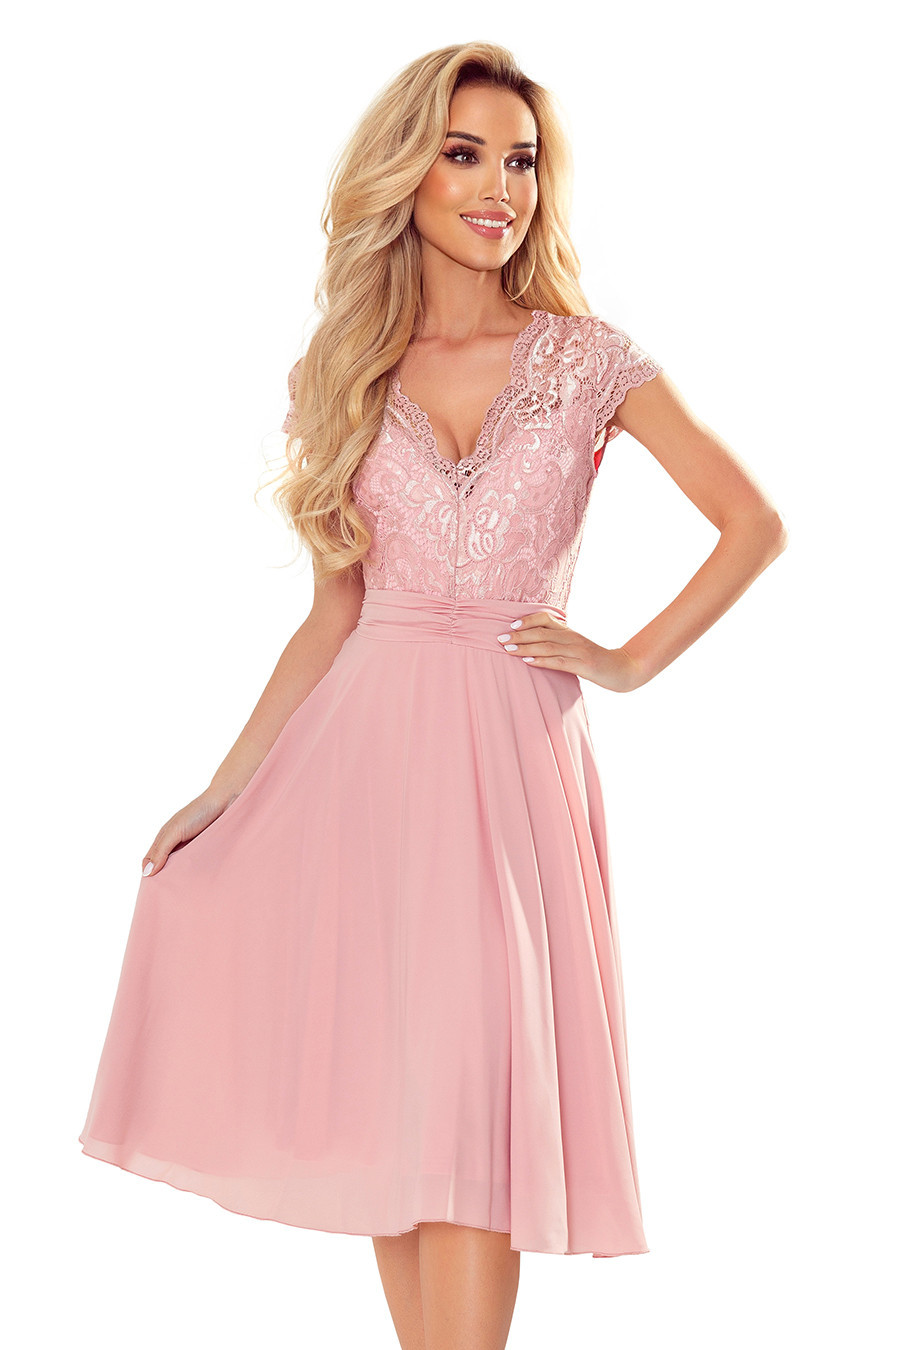 LINDA - Dámské šifonové šaty ve špinavě růžové barvě s krajkovým výstřihem 381-1 S